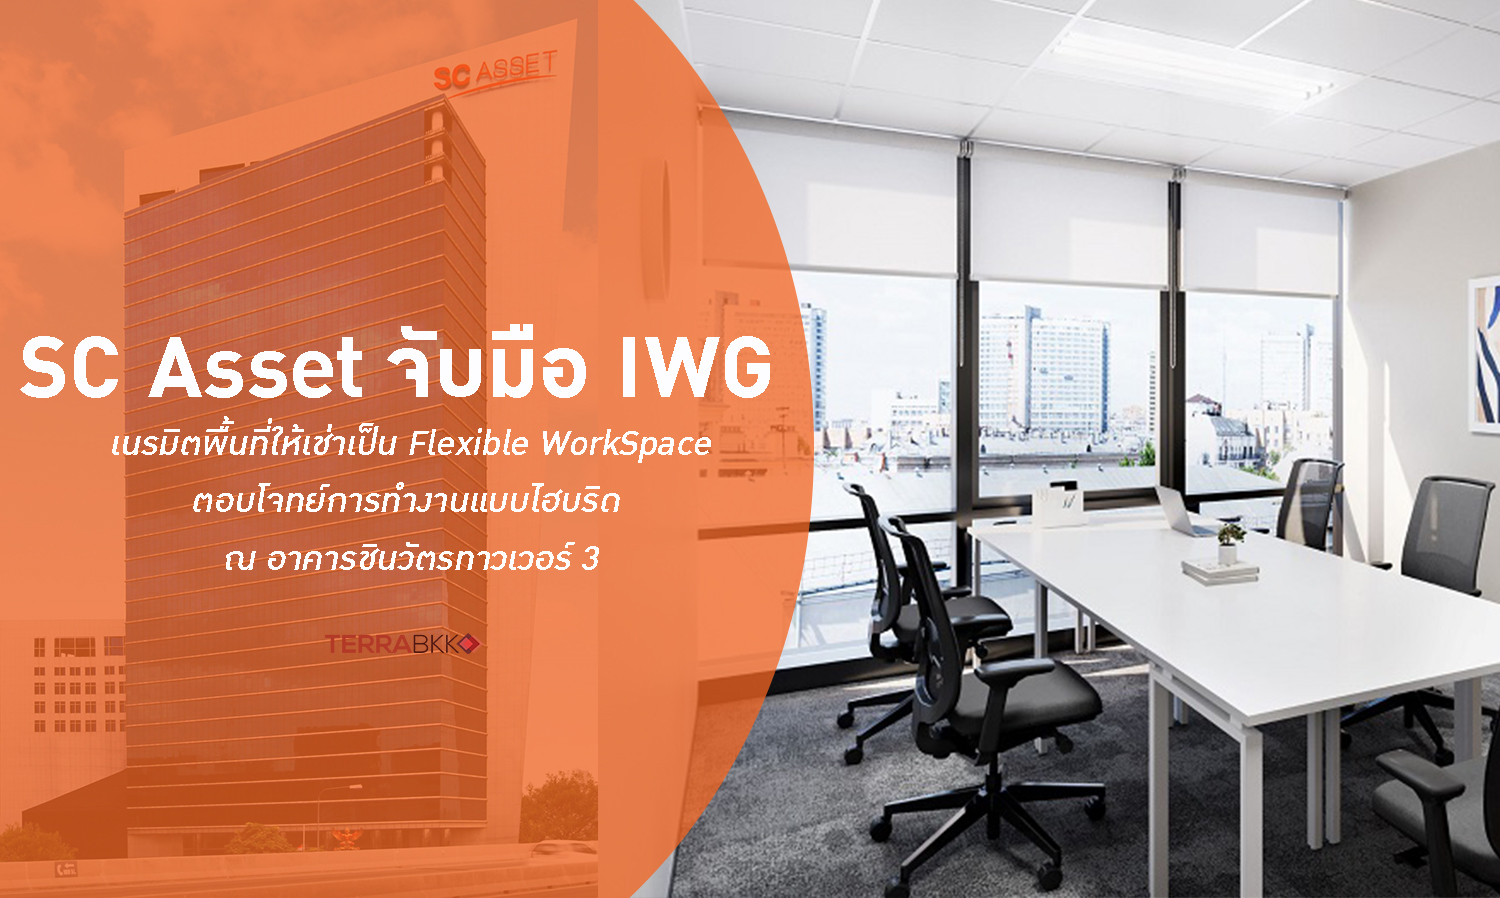 SC Asset จับมือ IWG เนรมิตพื้นที่ให้เช่าเป็น Flexible WorkSpace ตอบโจทย์การทำงานแบบไฮบริด ณ อาคารชินวัตรทาวเวอร์ 3